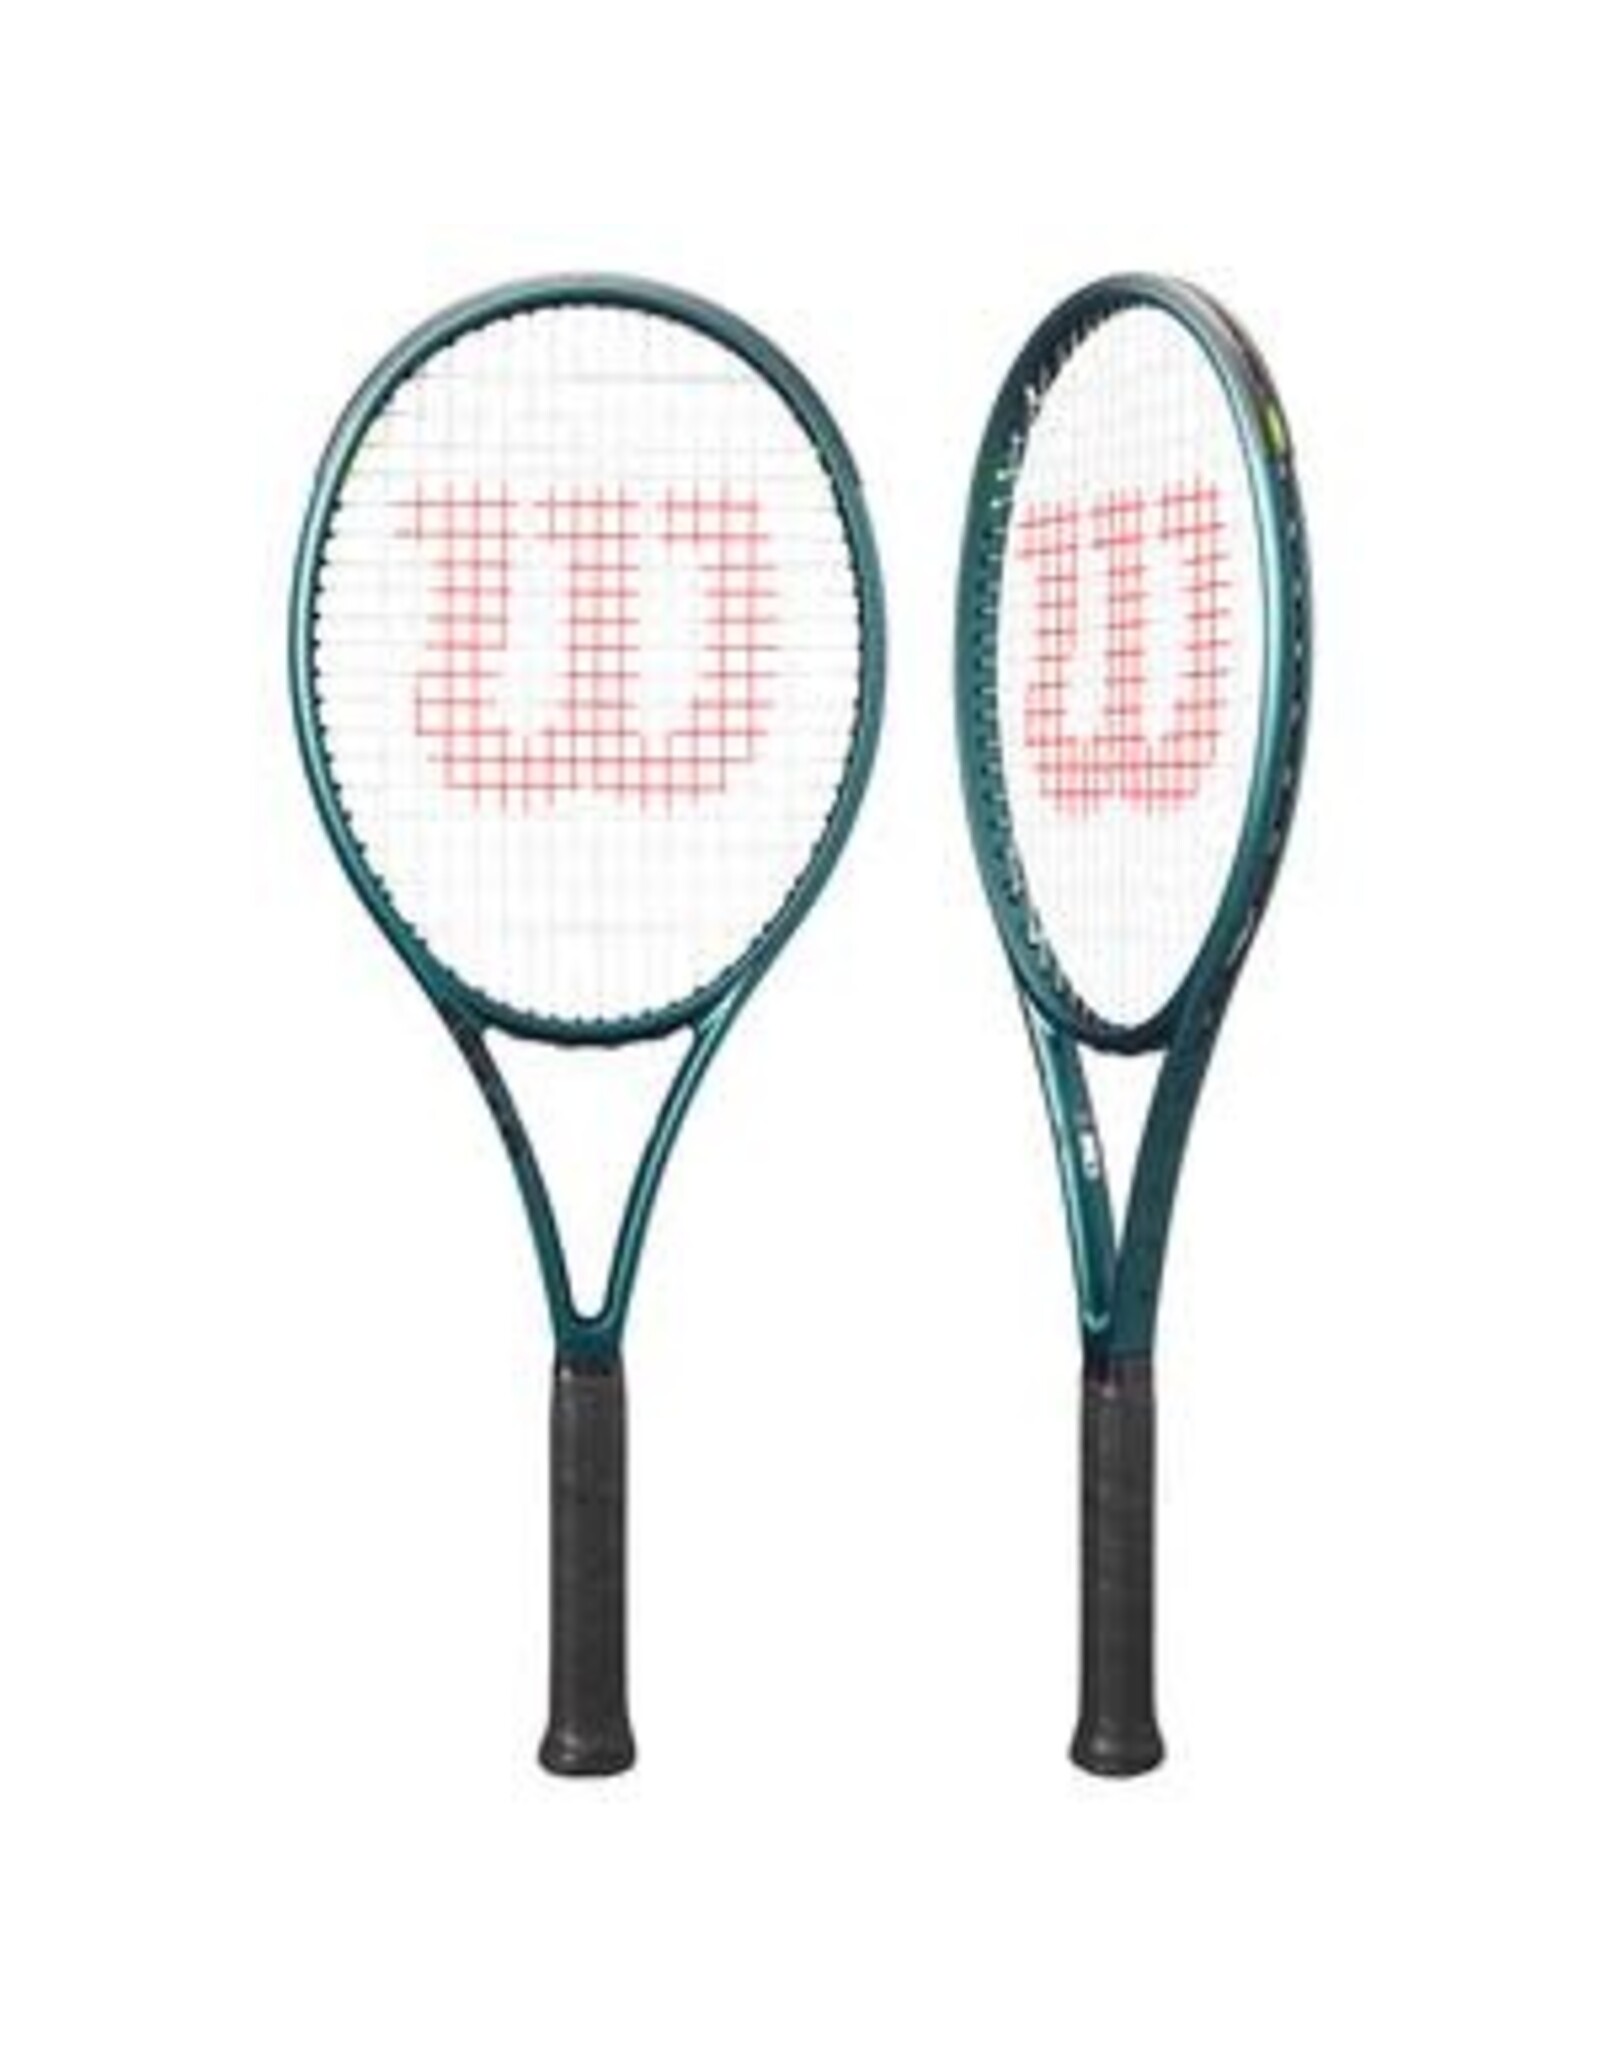 Wilson Wilson Blade 98 18x20  v9 Tennis Racquet